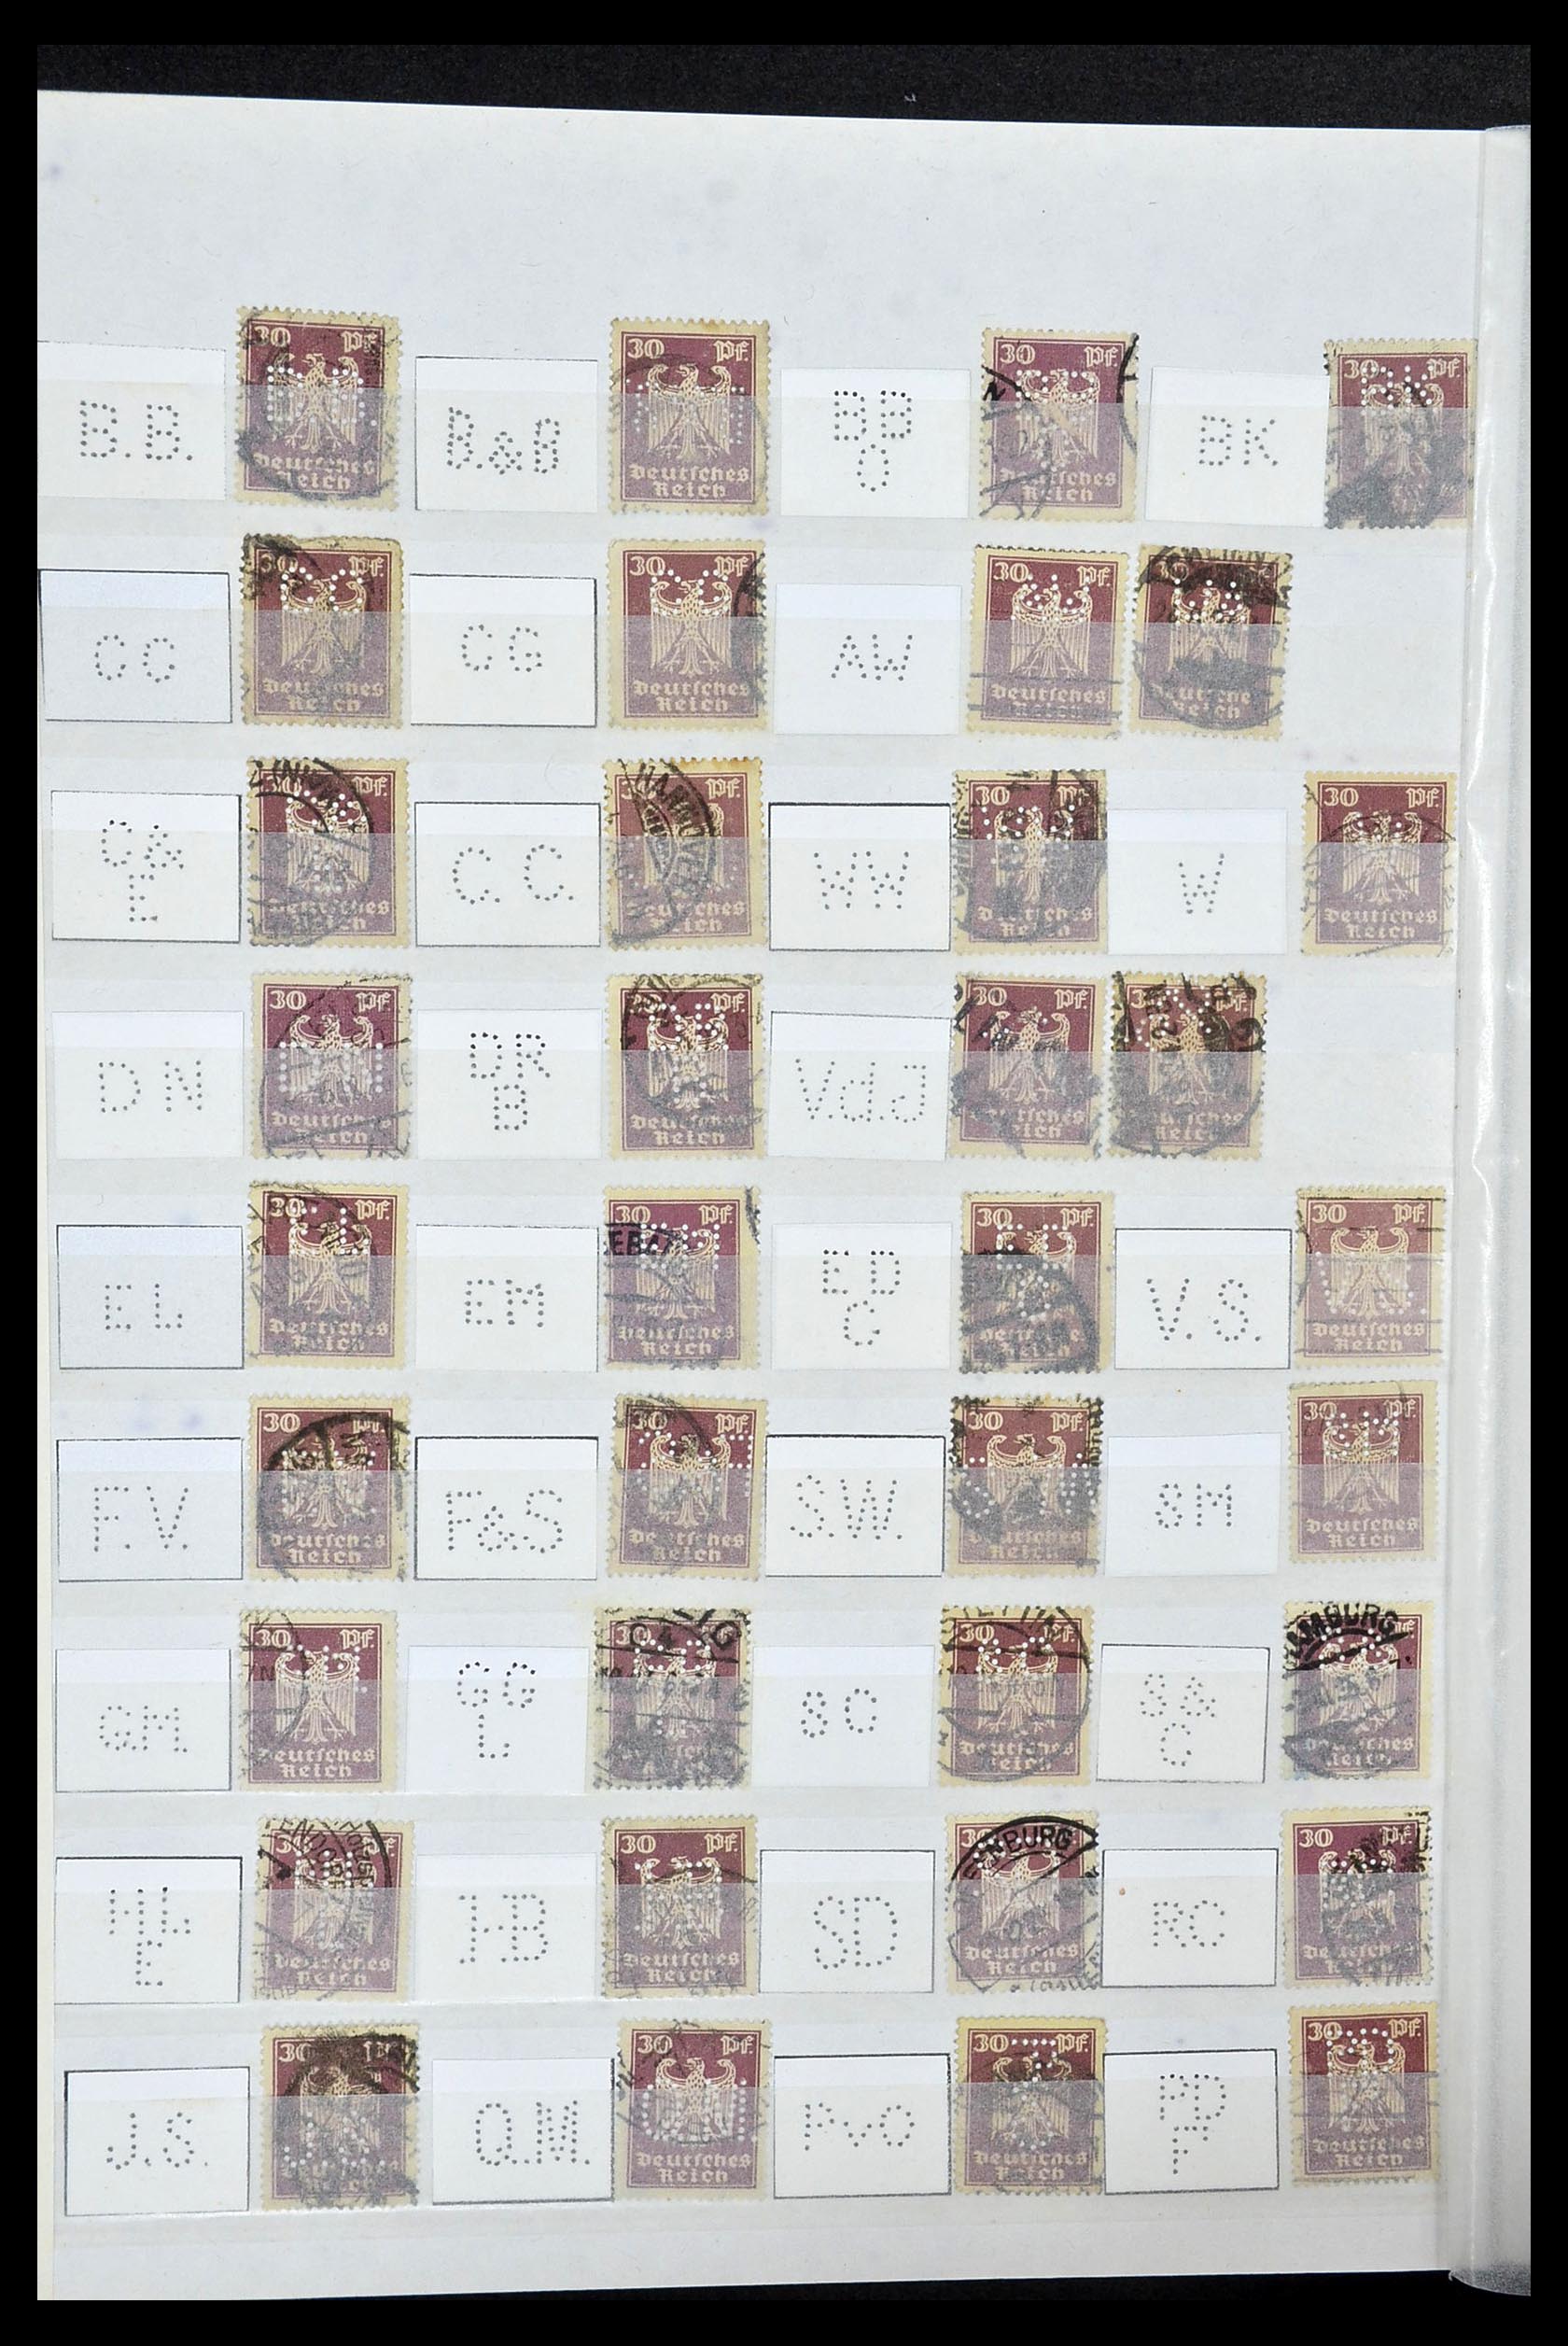 34071 036 - Stamp collection 34071 German Reich perfins 1923-1930.